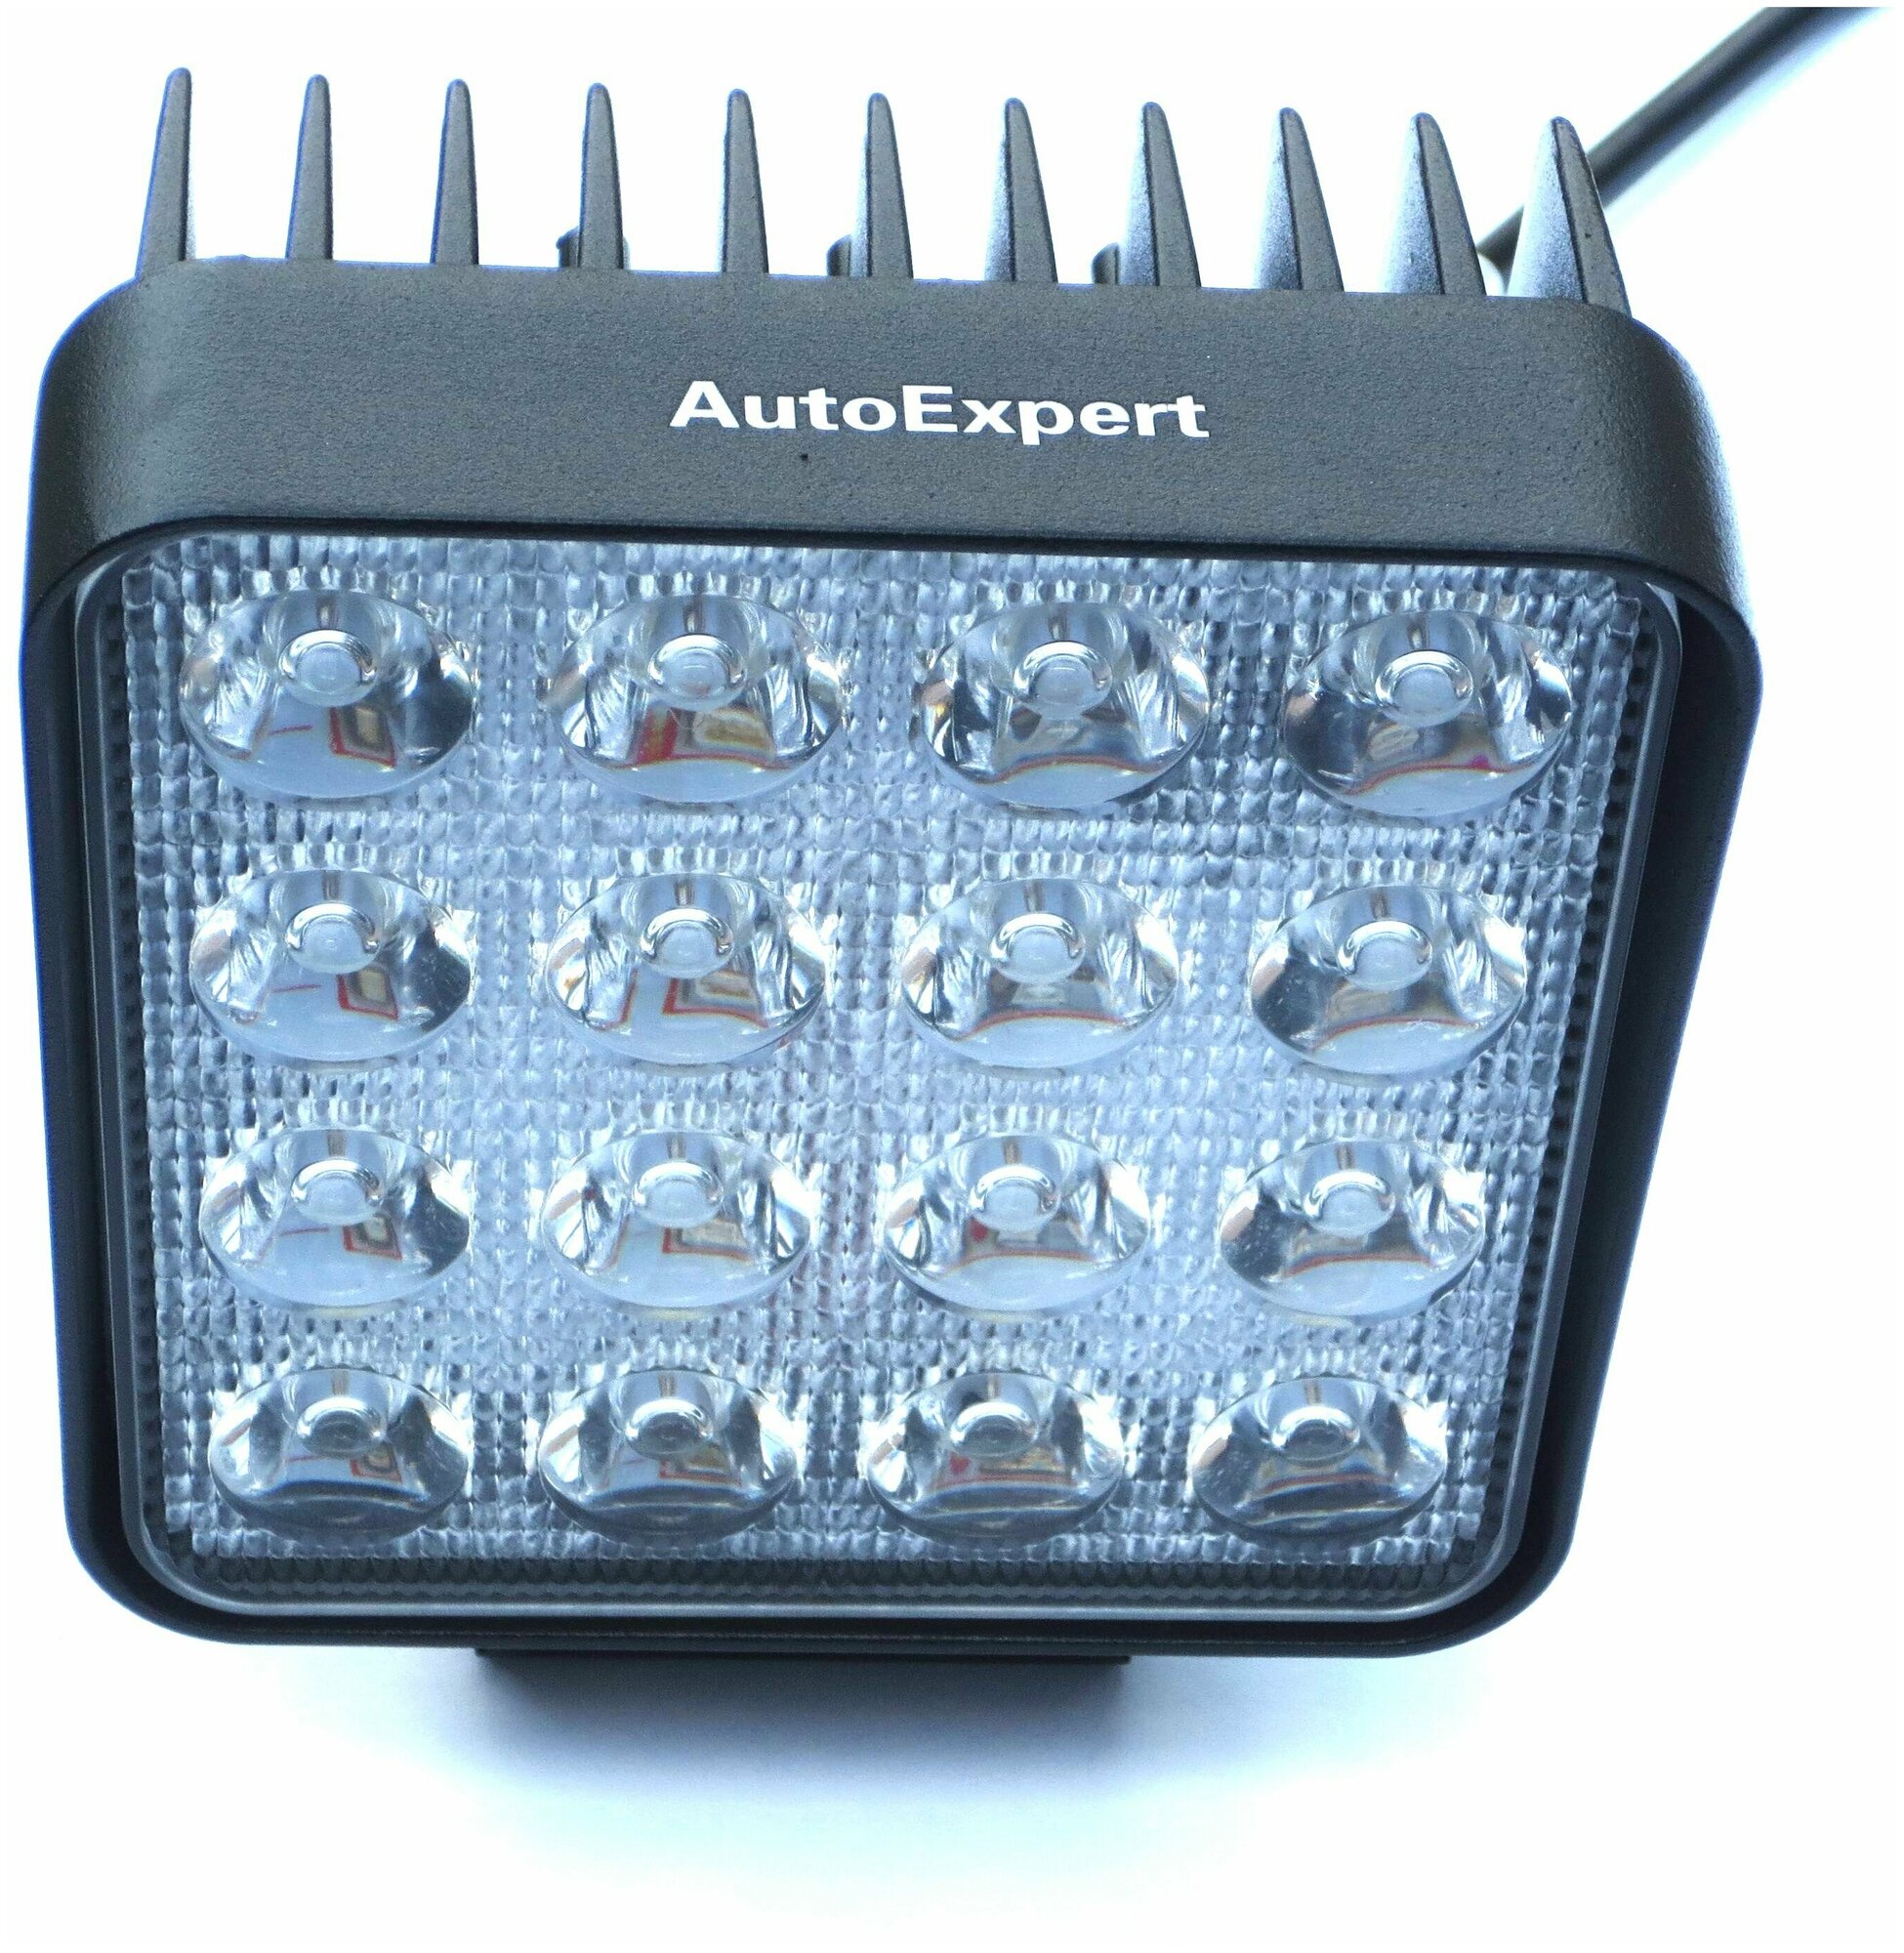 Фара светодиодная AutoExpert C48B для Off Road 108*108*57 мм 9V-48V 2850 Lum 6000K IP67 16 LED по 3W ближний свет